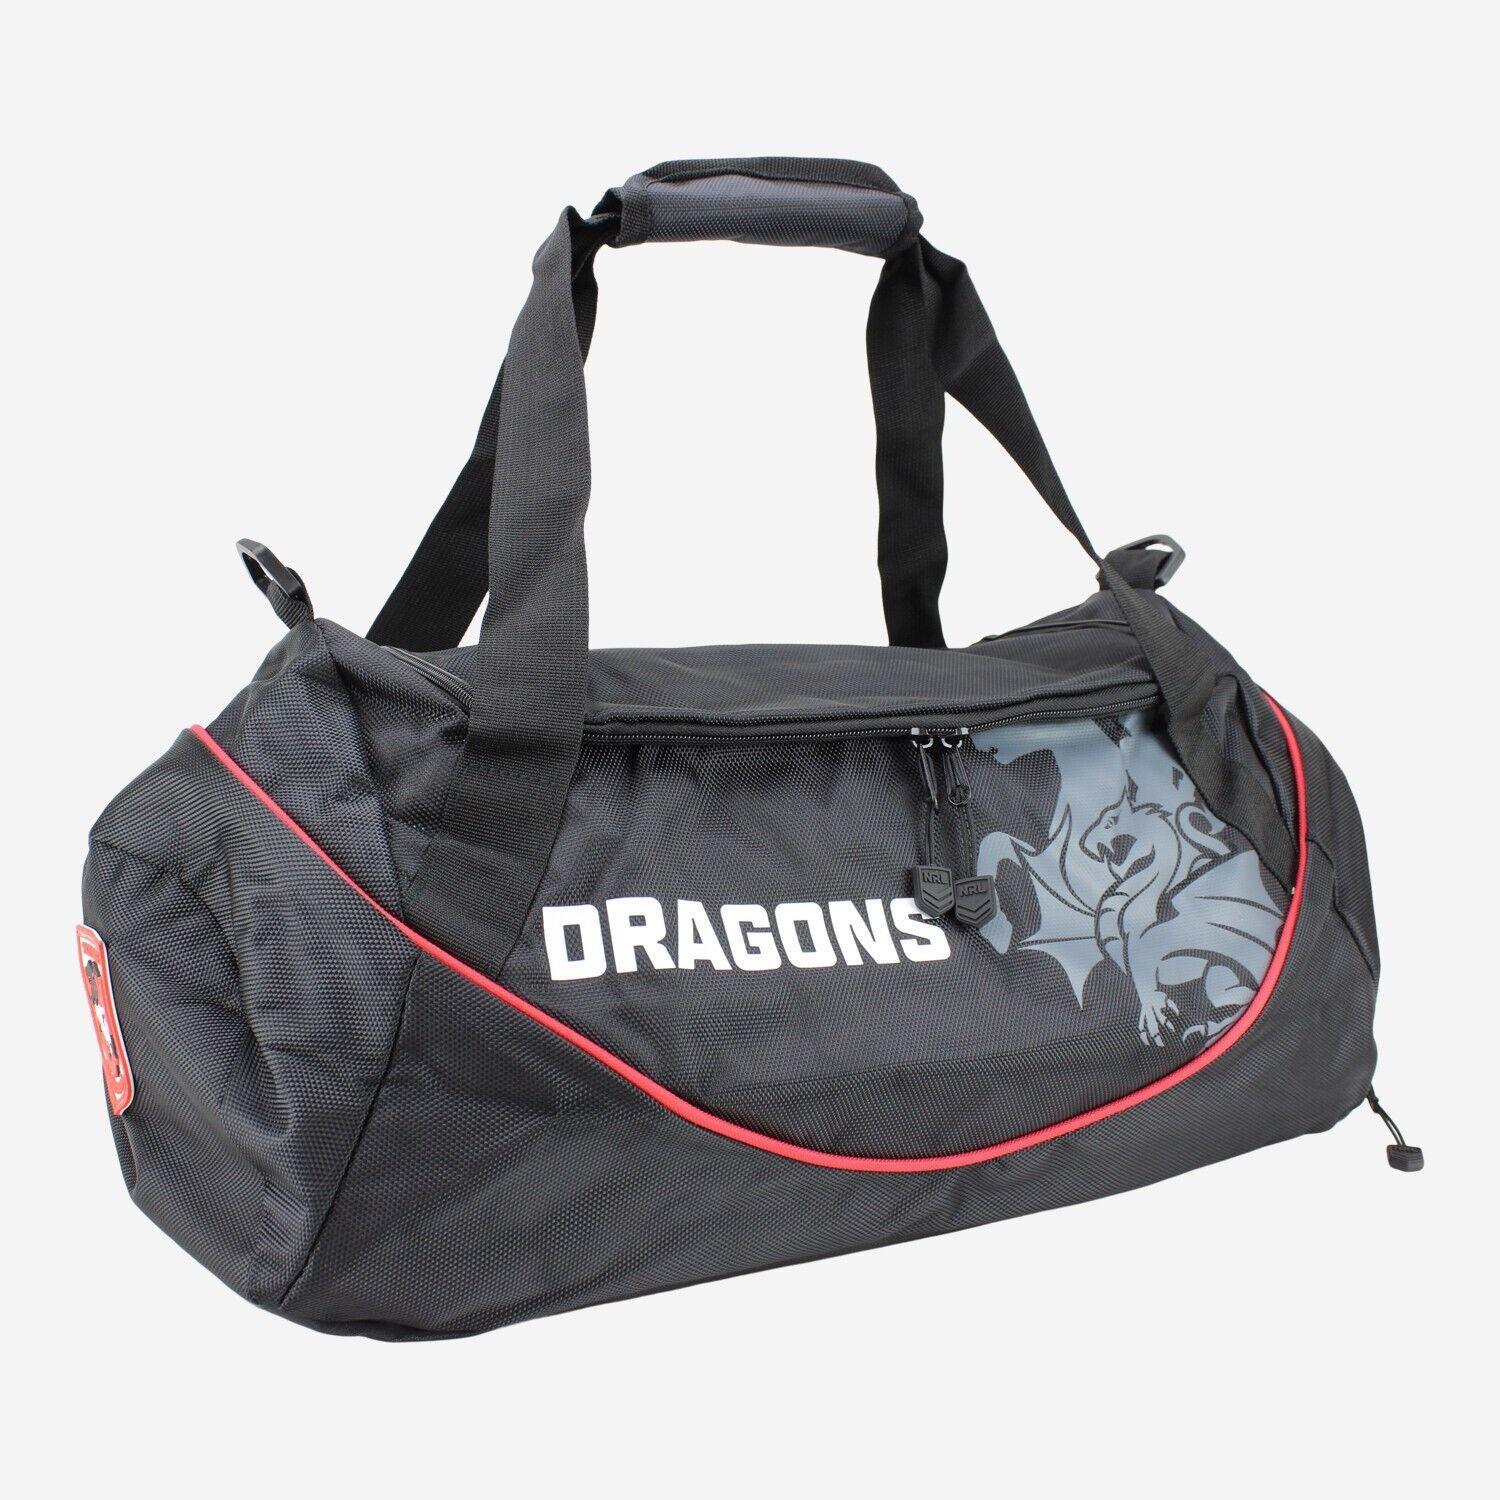 NRL Shadow Sports Bag - St George Illawarra Dragons - Gym Travel Duffle Bag